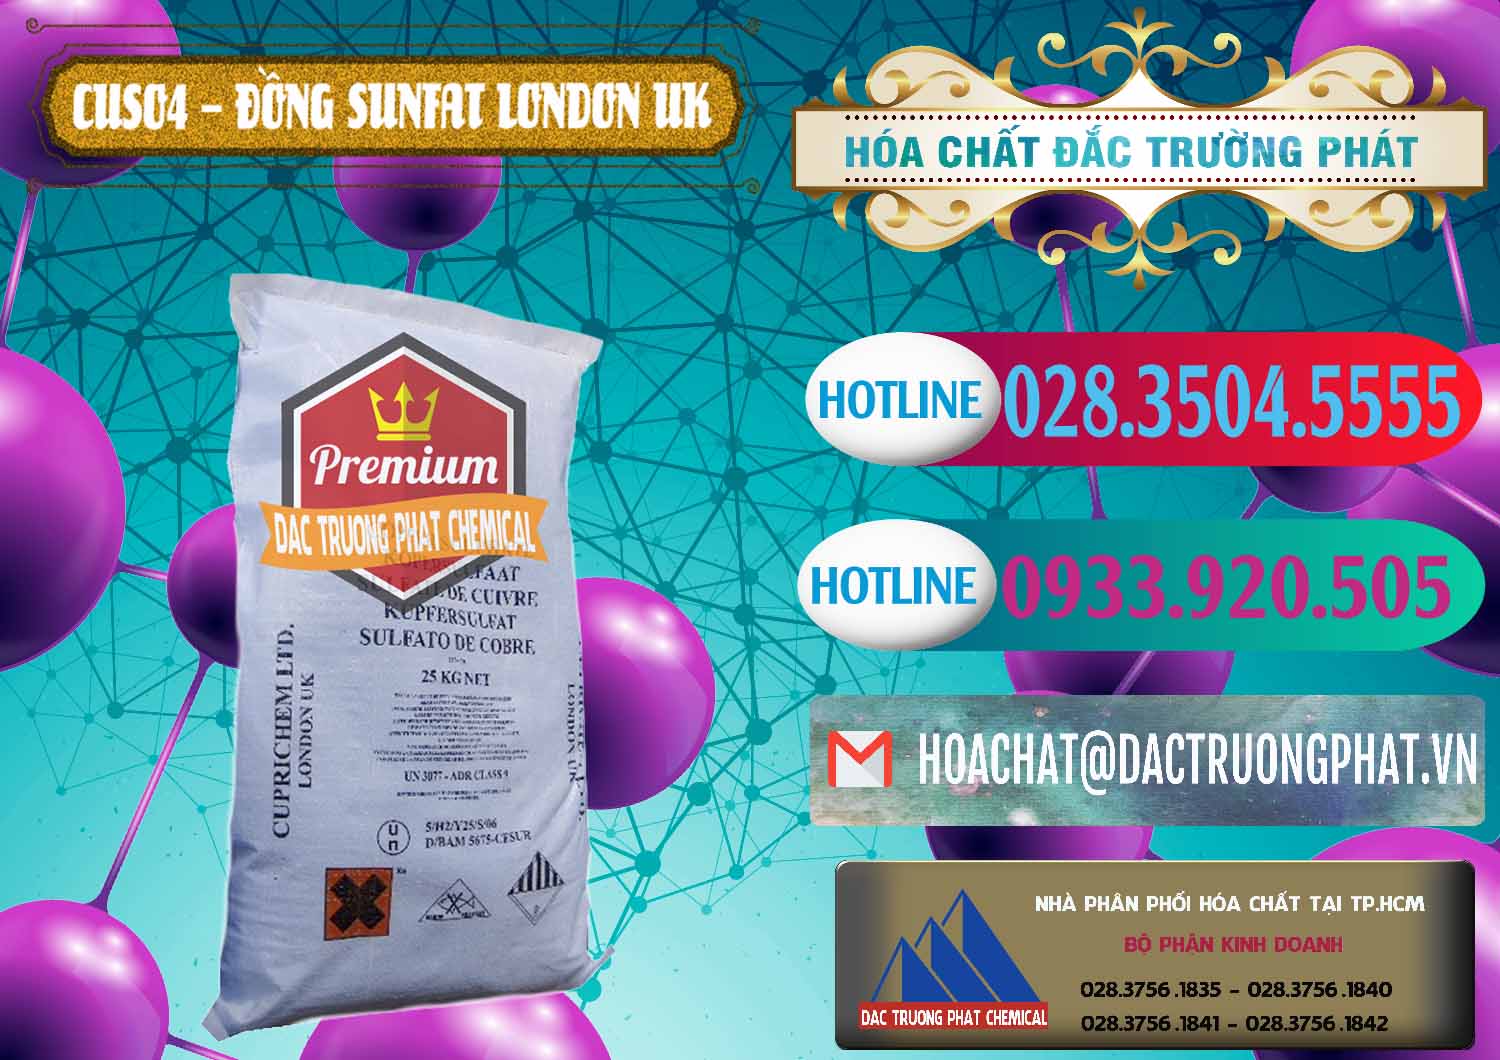 Đơn vị cung cấp và bán CuSO4 – Đồng Sunfat Anh Uk Kingdoms - 0478 - Nơi phân phối & cung ứng hóa chất tại TP.HCM - truongphat.vn